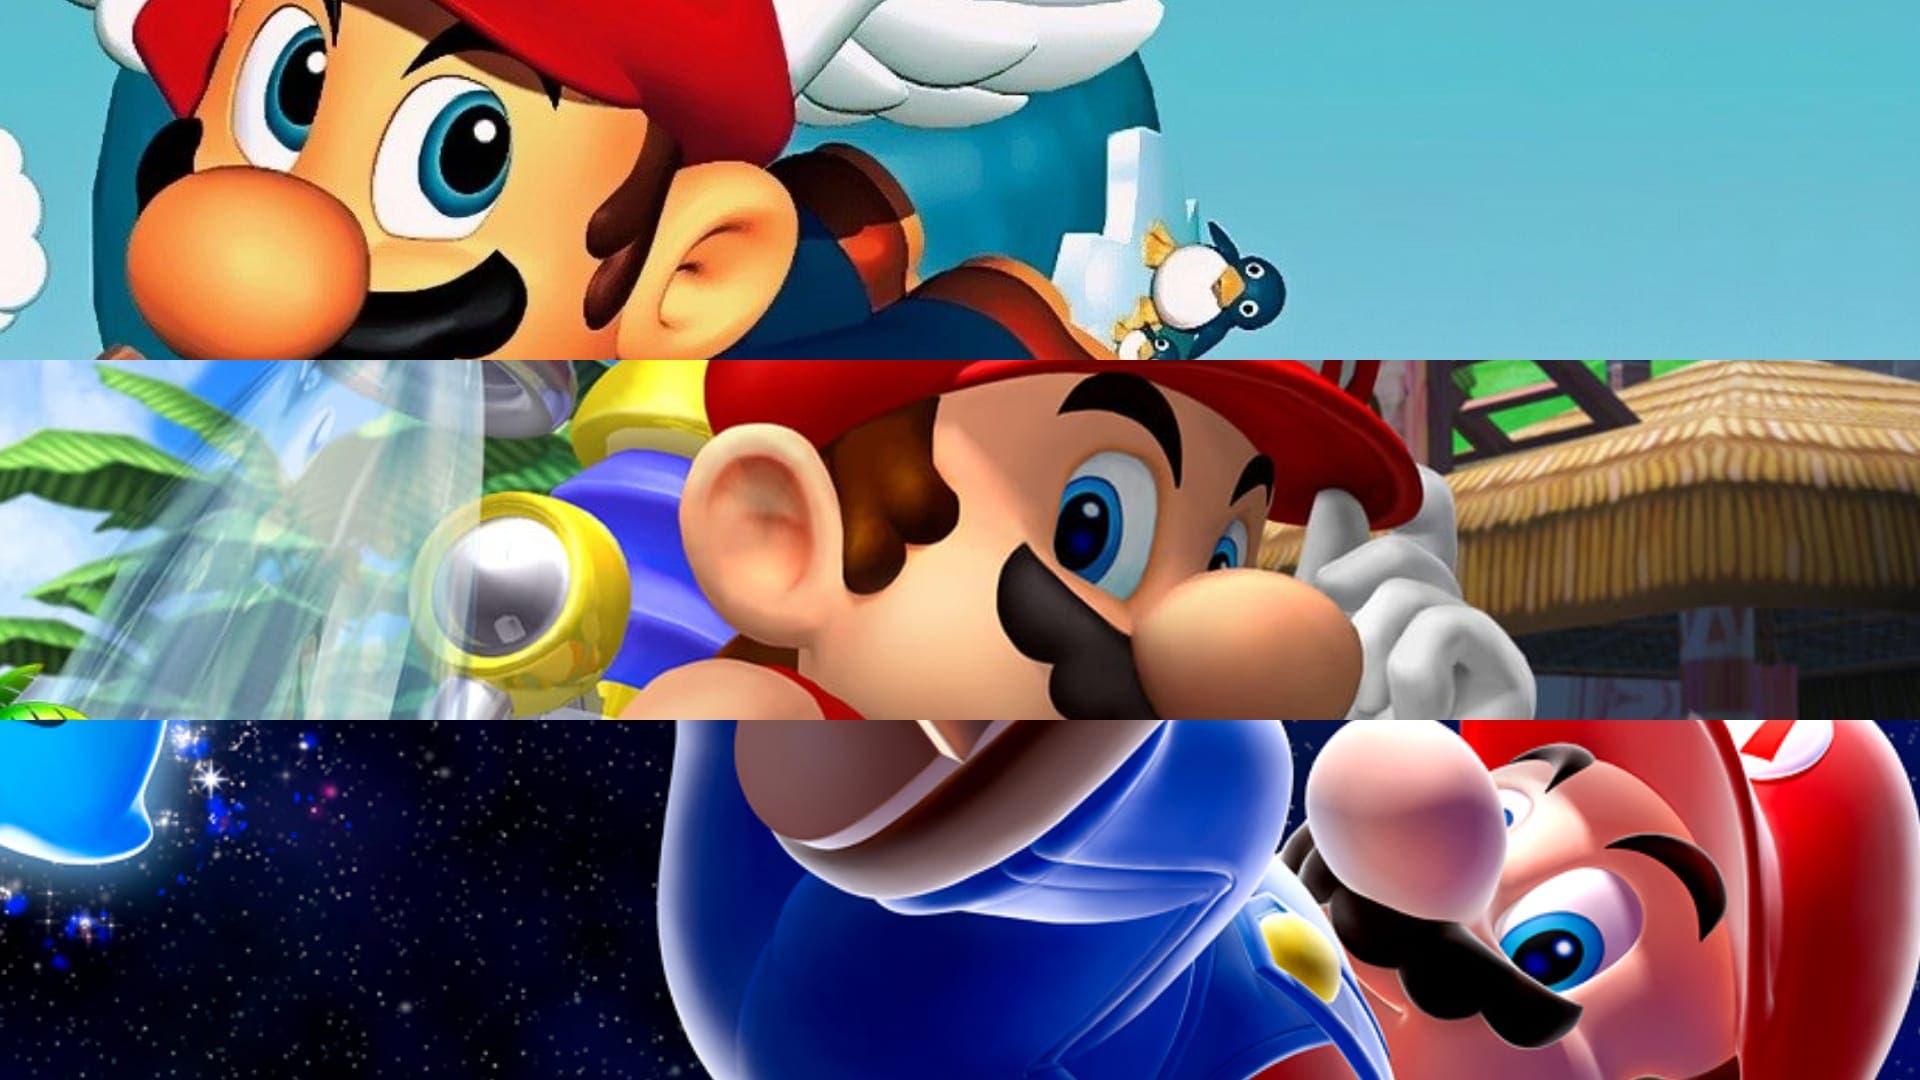 Super Mario 3D All-Stars apunta a colocarse como el tercer juego con mejor debut en ventas del año